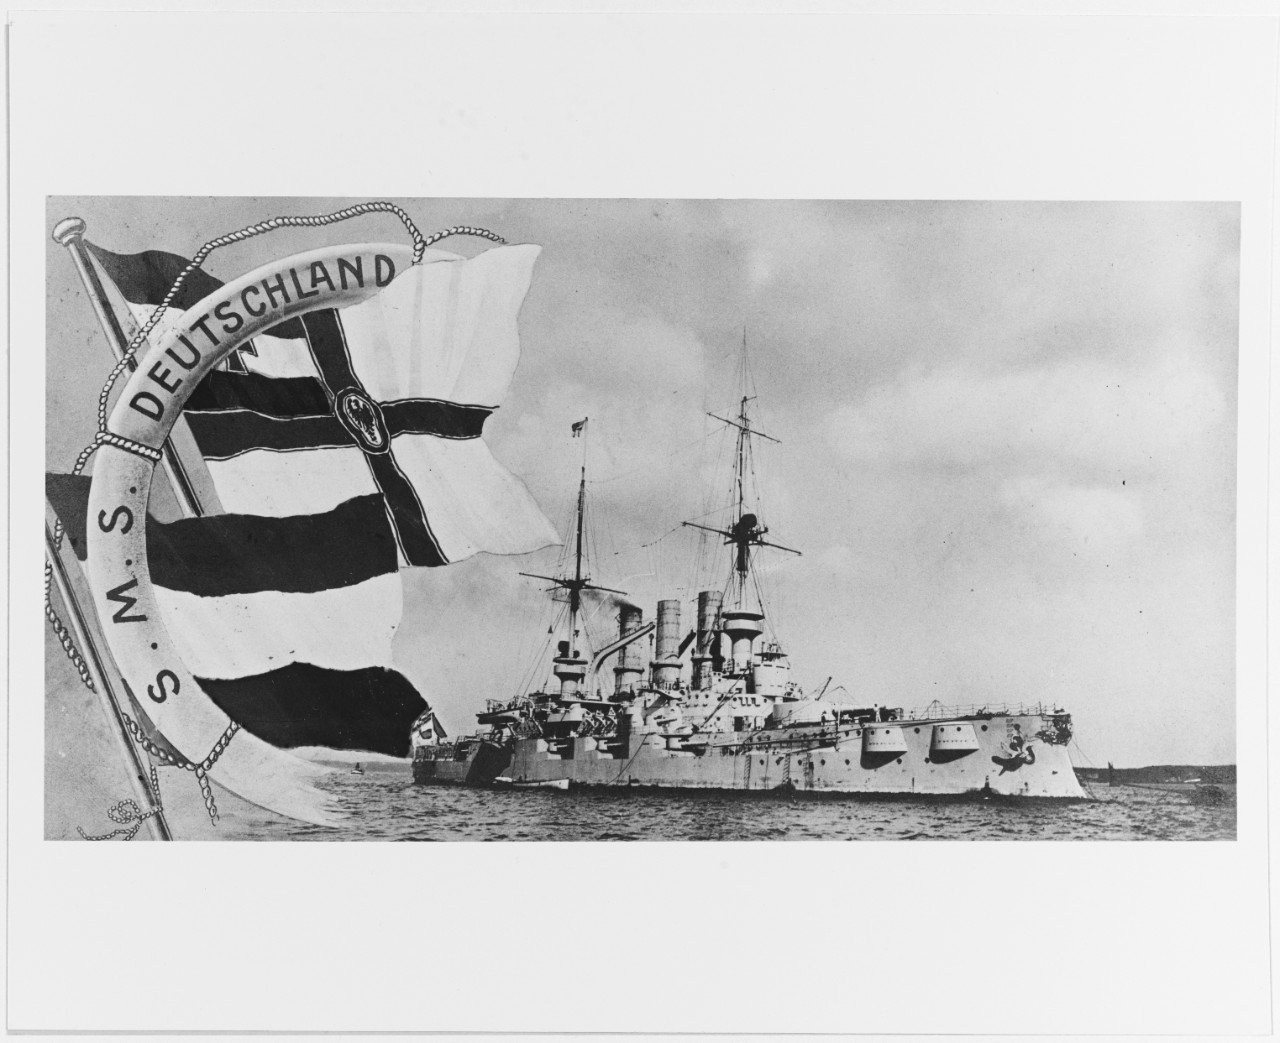 SMS DEUTSCHLAND (German battleship, 1904)